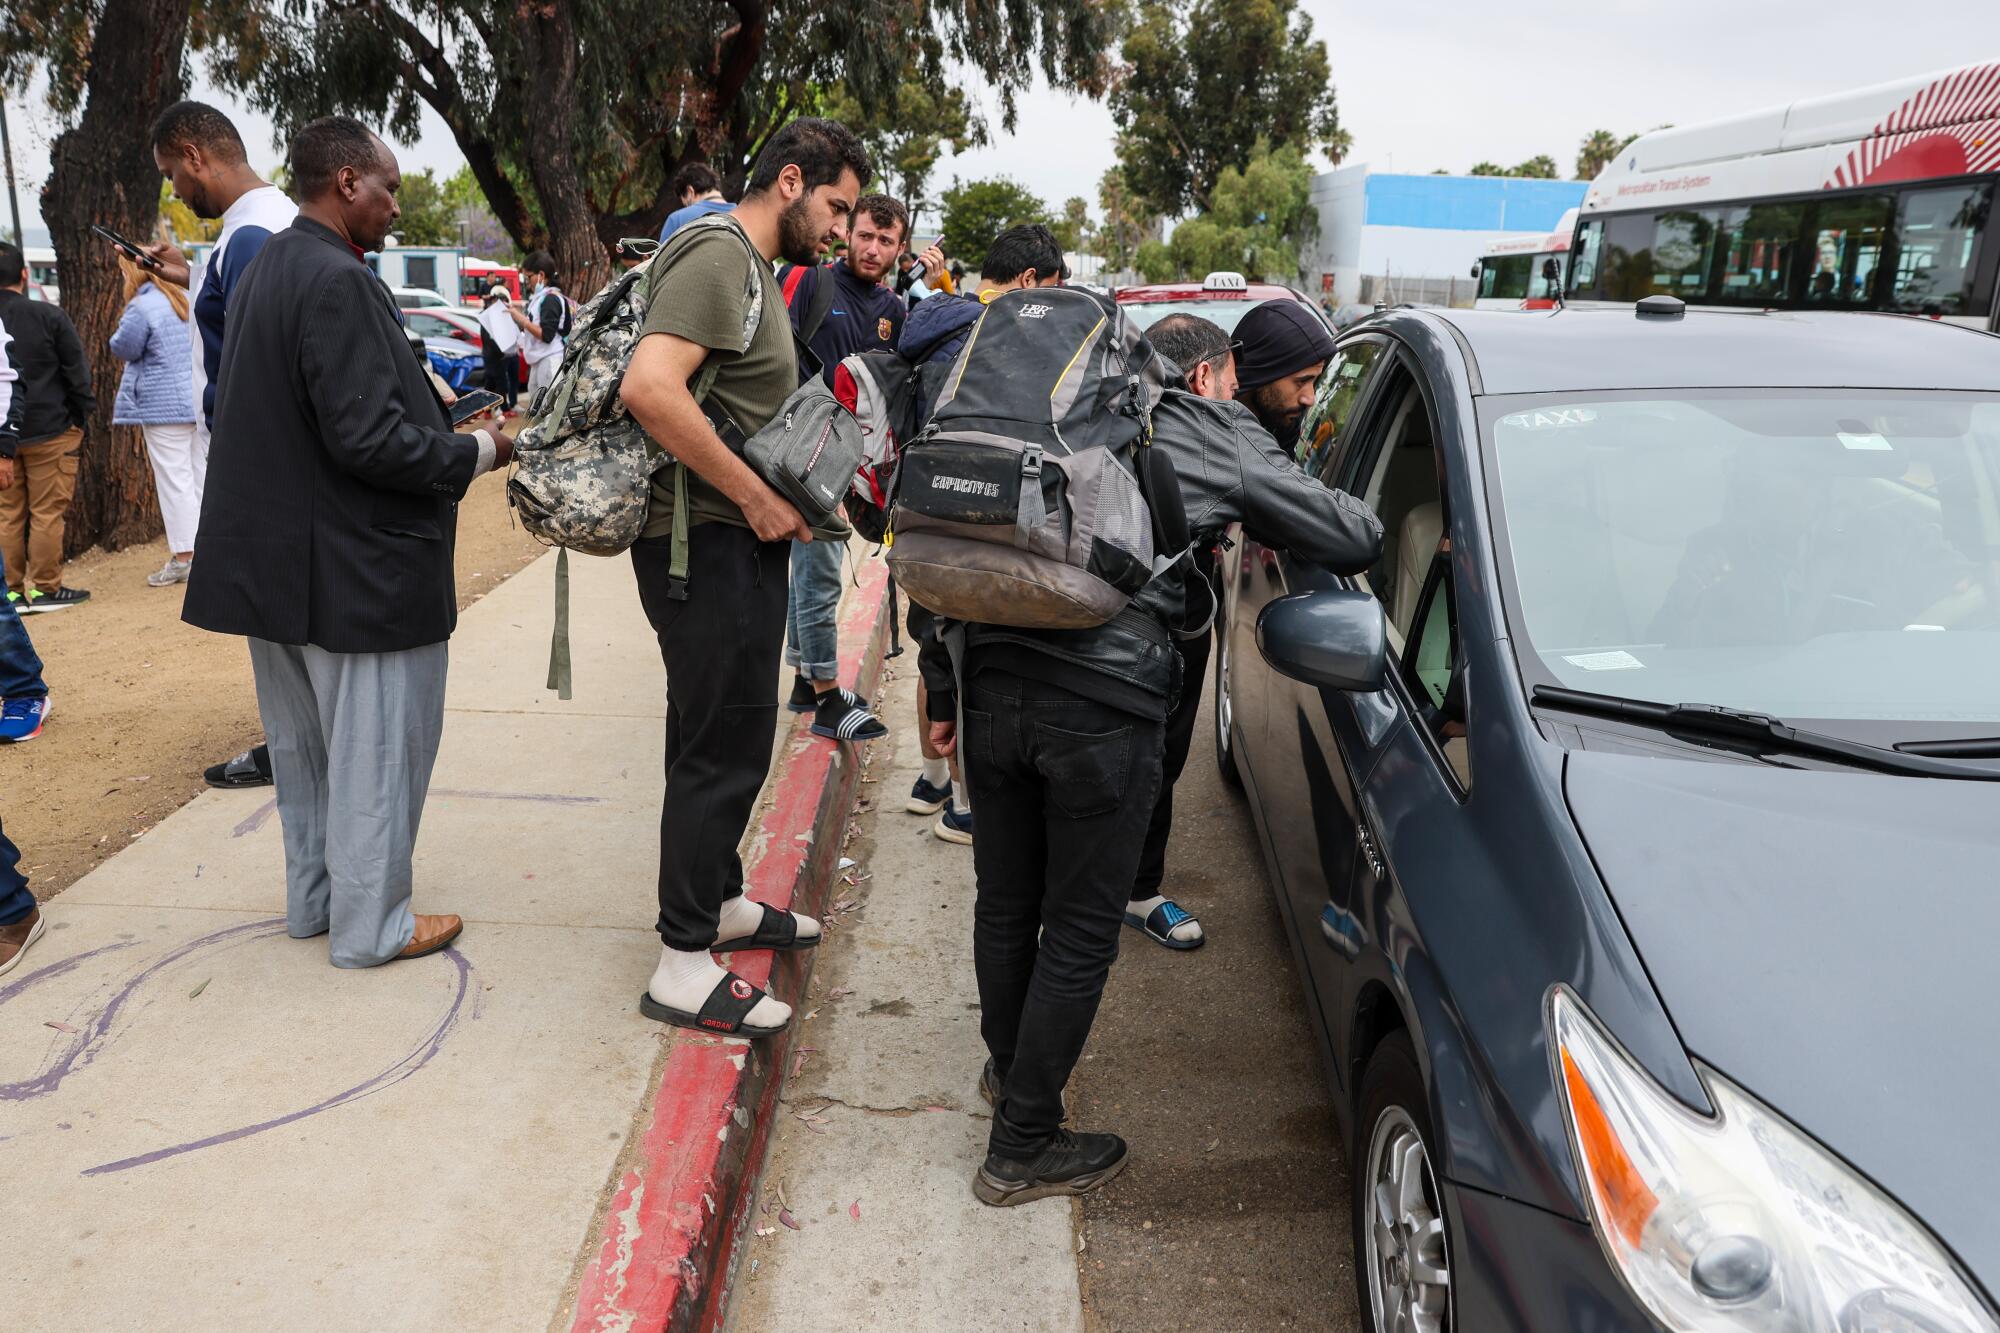   边境巡逻人员将移民送至艾里斯大道站，移民们与出租车司机协商车费。 